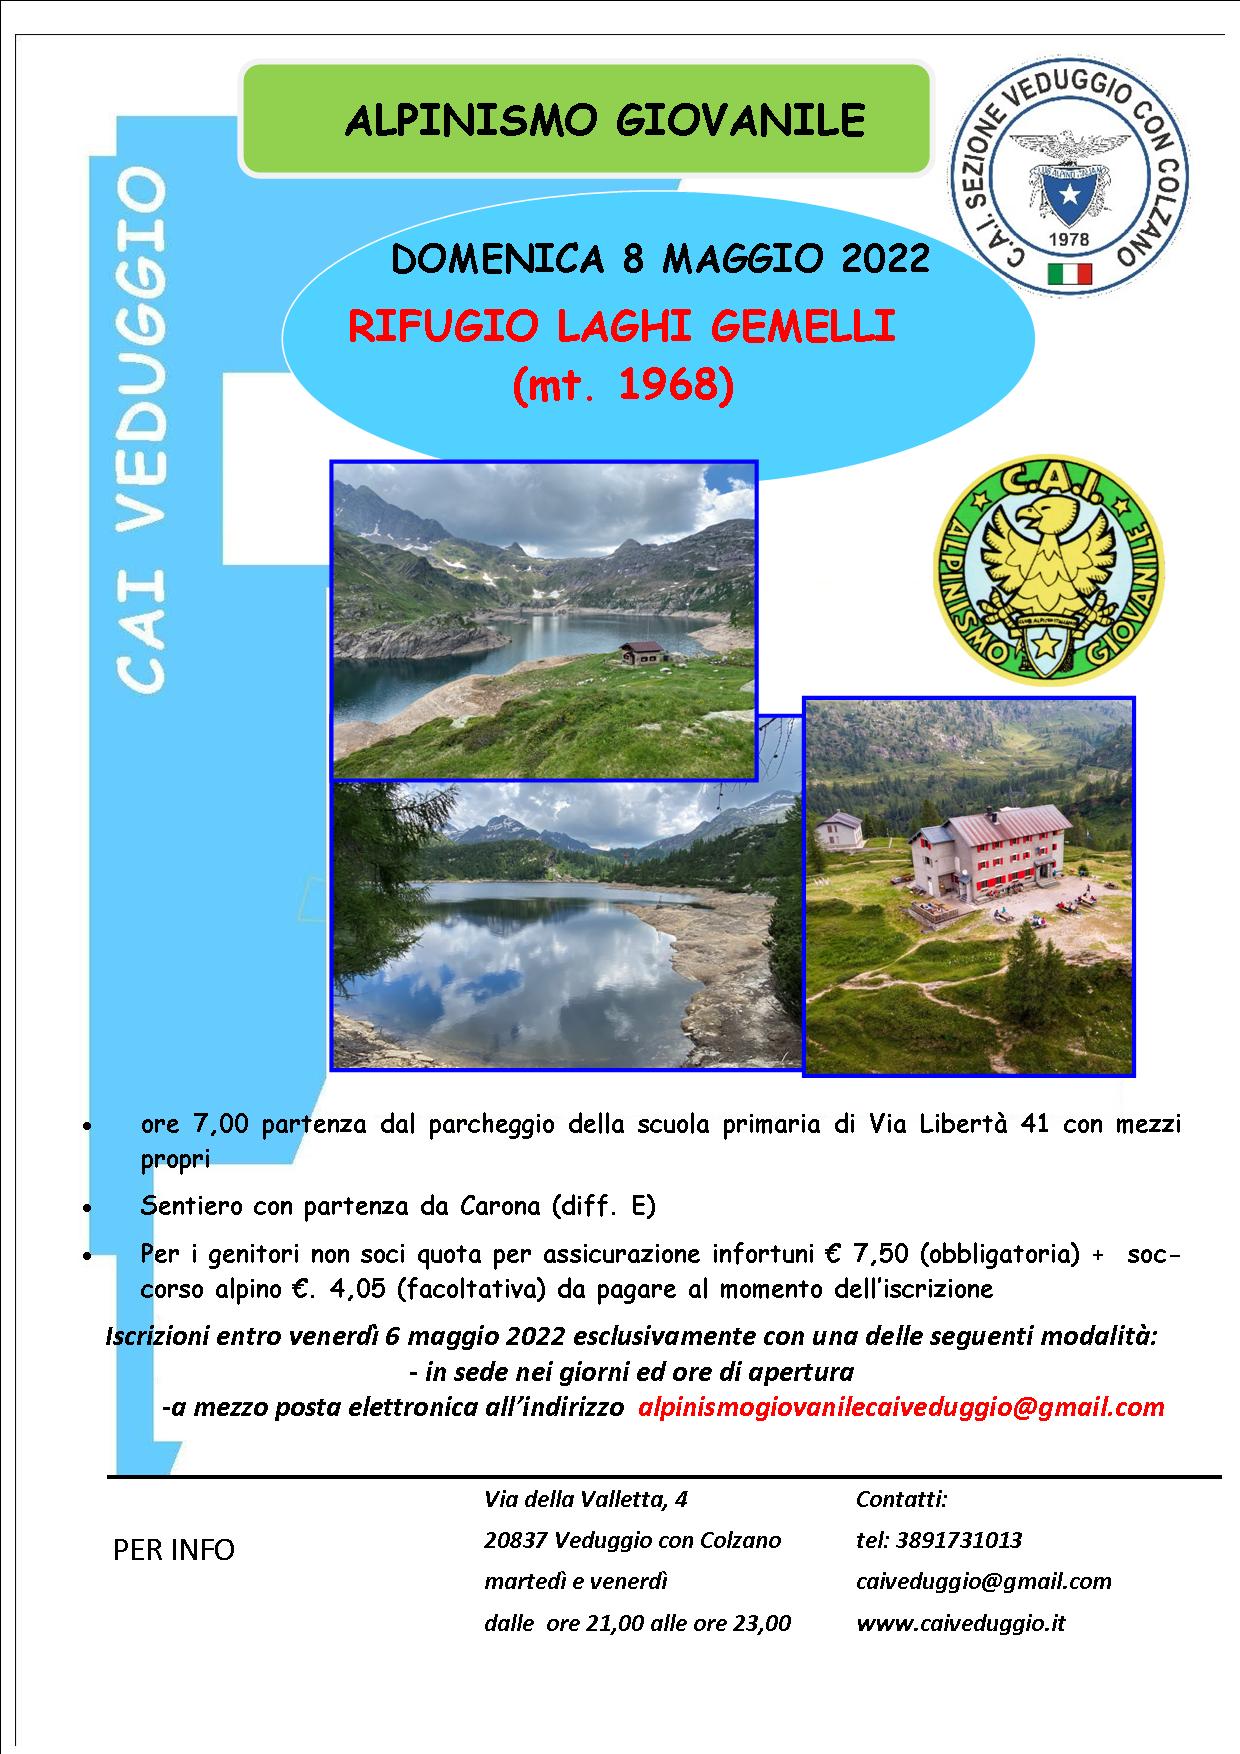 Domenica 8 maggio 2022 – Rifugio Laghi Gemelli (Alpinismo Giovanile)